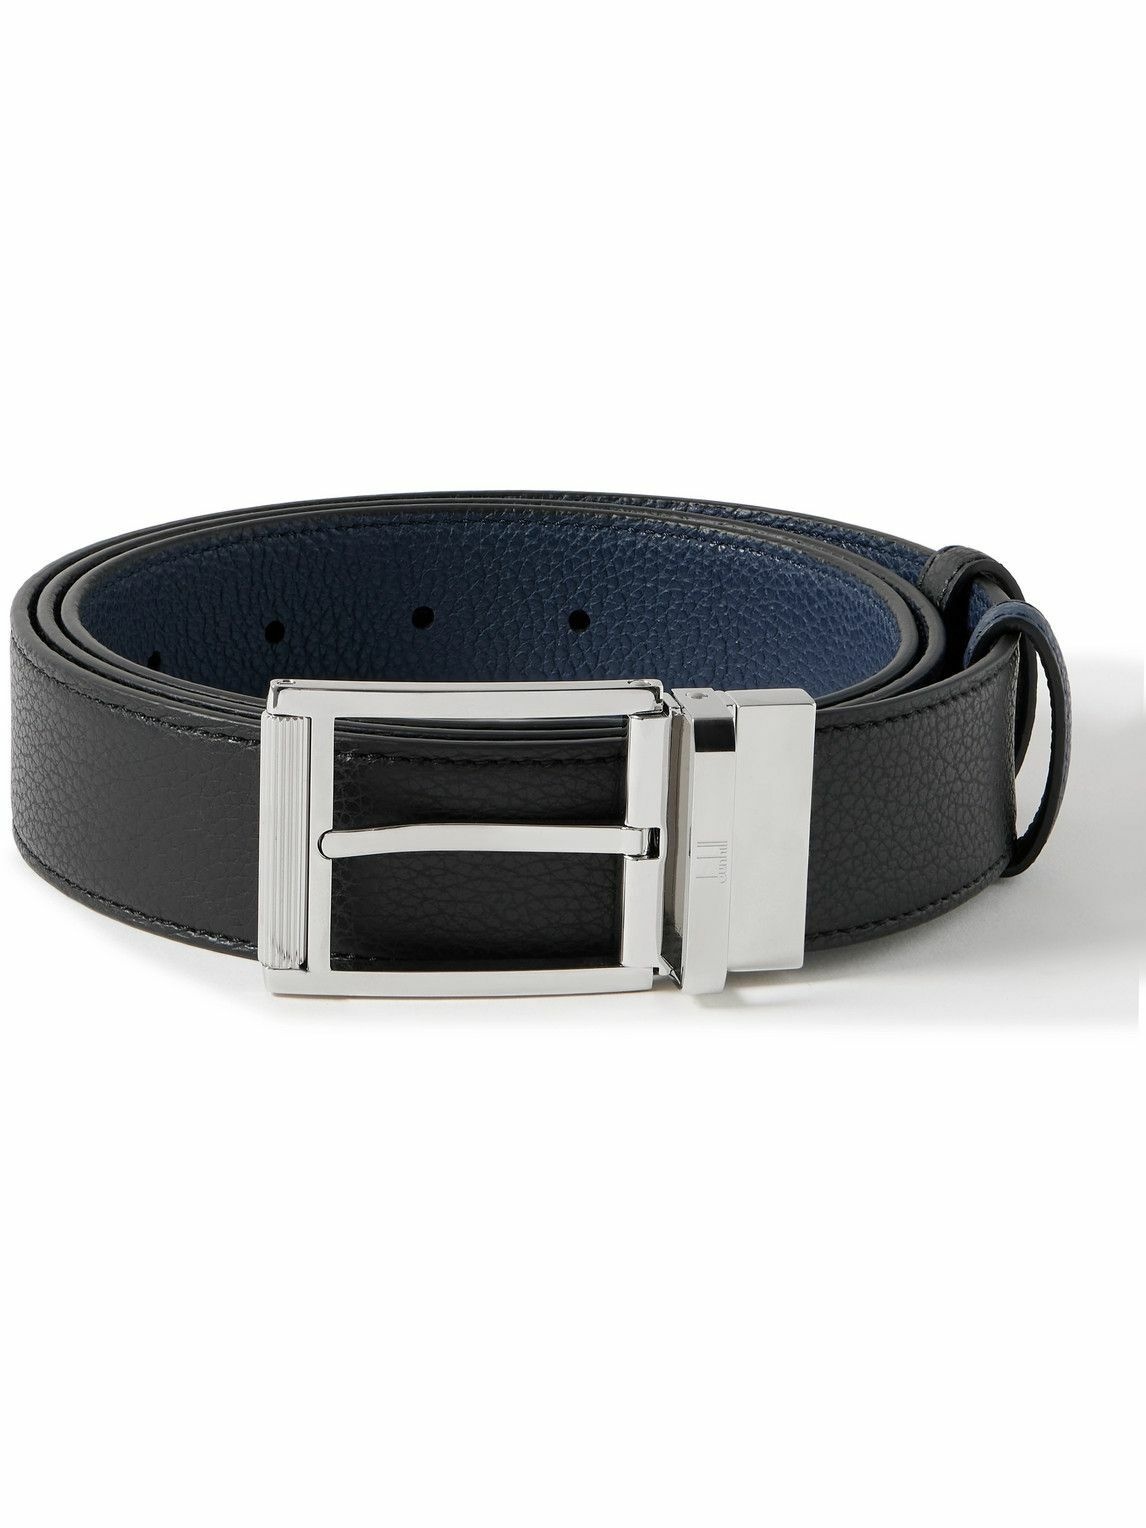 Photo: Dunhill - 3.5cm Reversible Full-Grain Leather Belt - Black